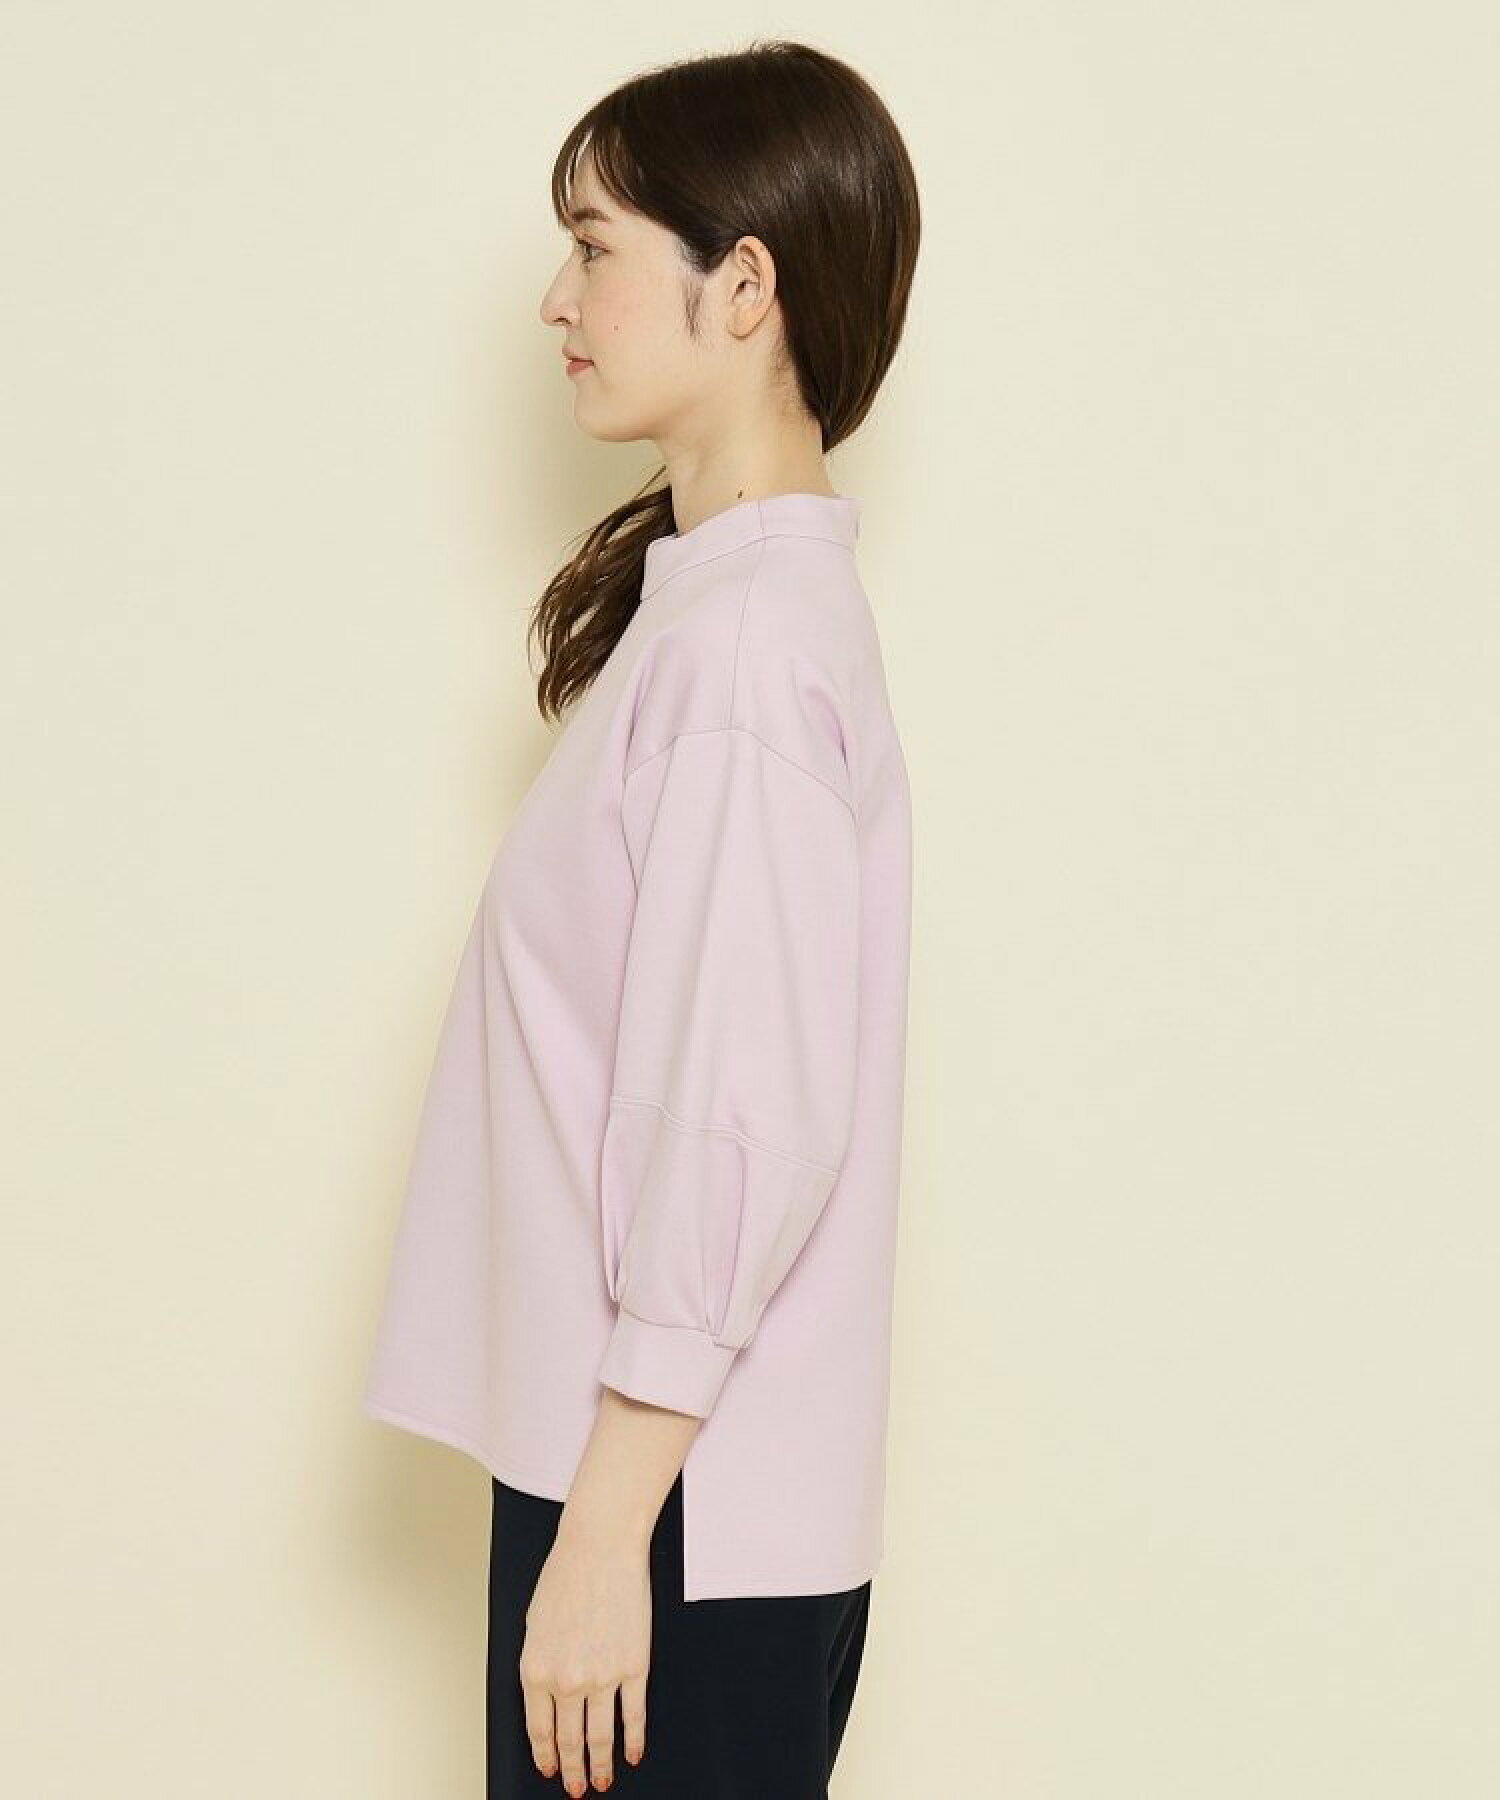 【洗える/日本製/袖デザイン/伸縮性】着心地よく,女性らしいデザインのプルオーバージャージ